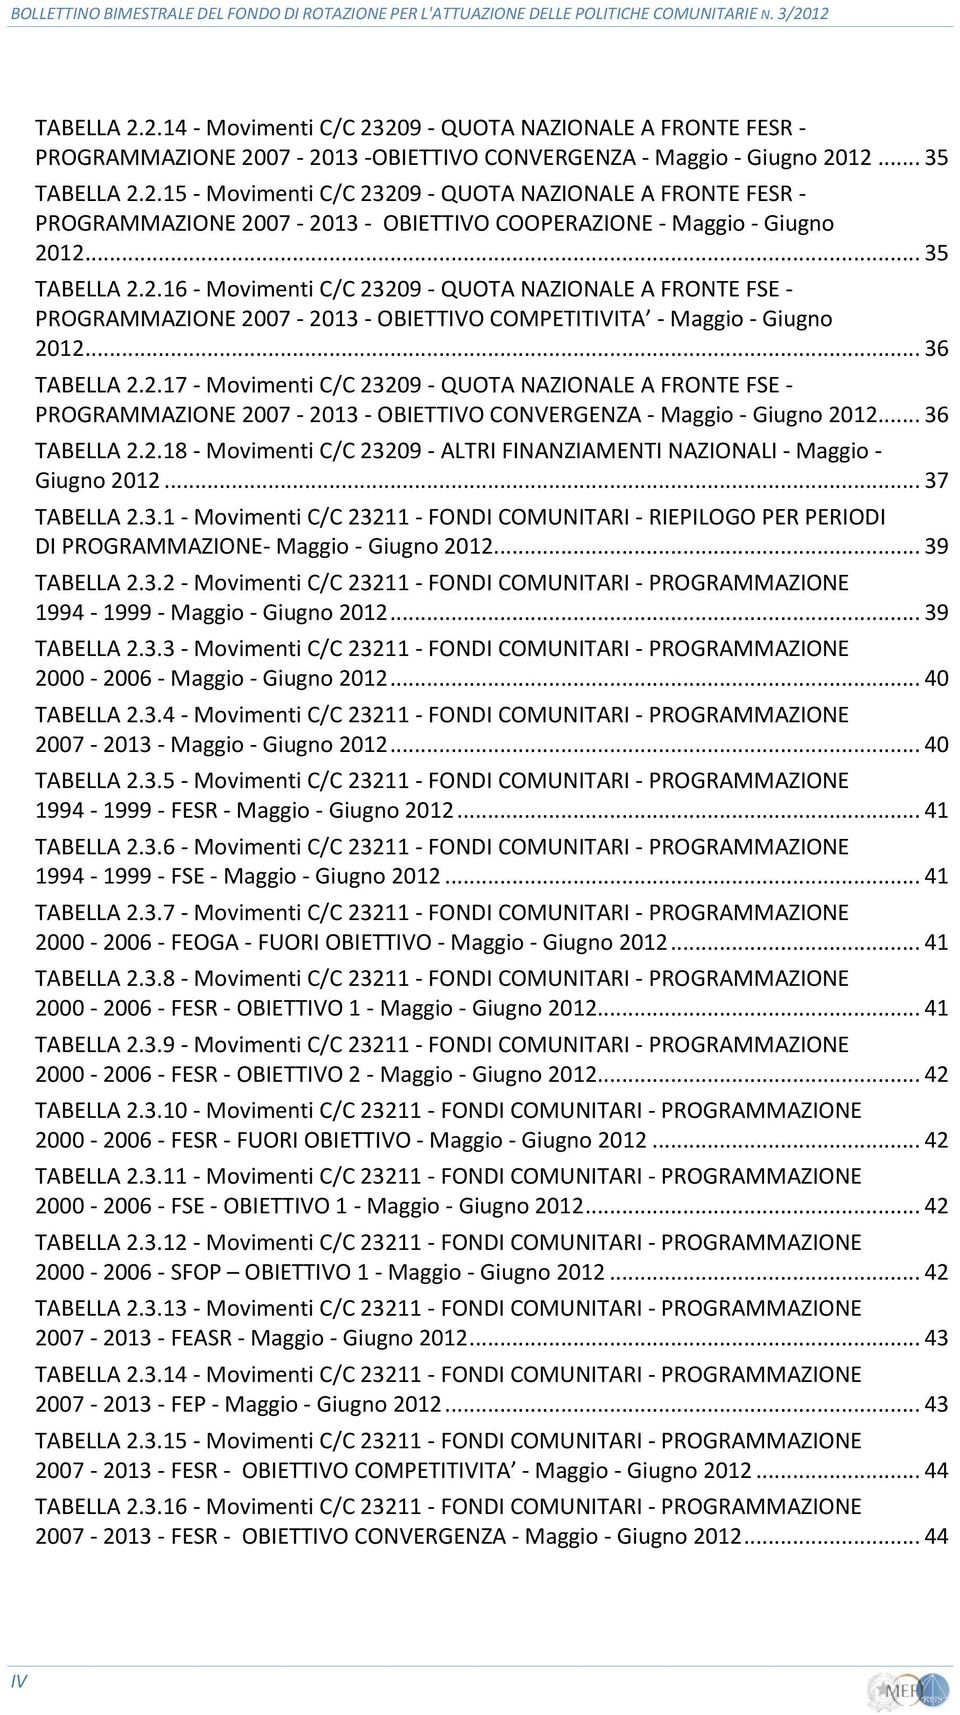 .. 36 TABELLA 2.2.18 - Movimenti C/C 23209 - ALTRI FINANZIAMENTI NAZIONALI - Maggio - Giugno 2012... 37 TABELLA 2.3.1 - Movimenti C/C 23211 - FONDI COMUNITARI - RIEPILOGO PER PERIODI DI PROGRAMMAZIONE- Maggio - Giugno 2012.